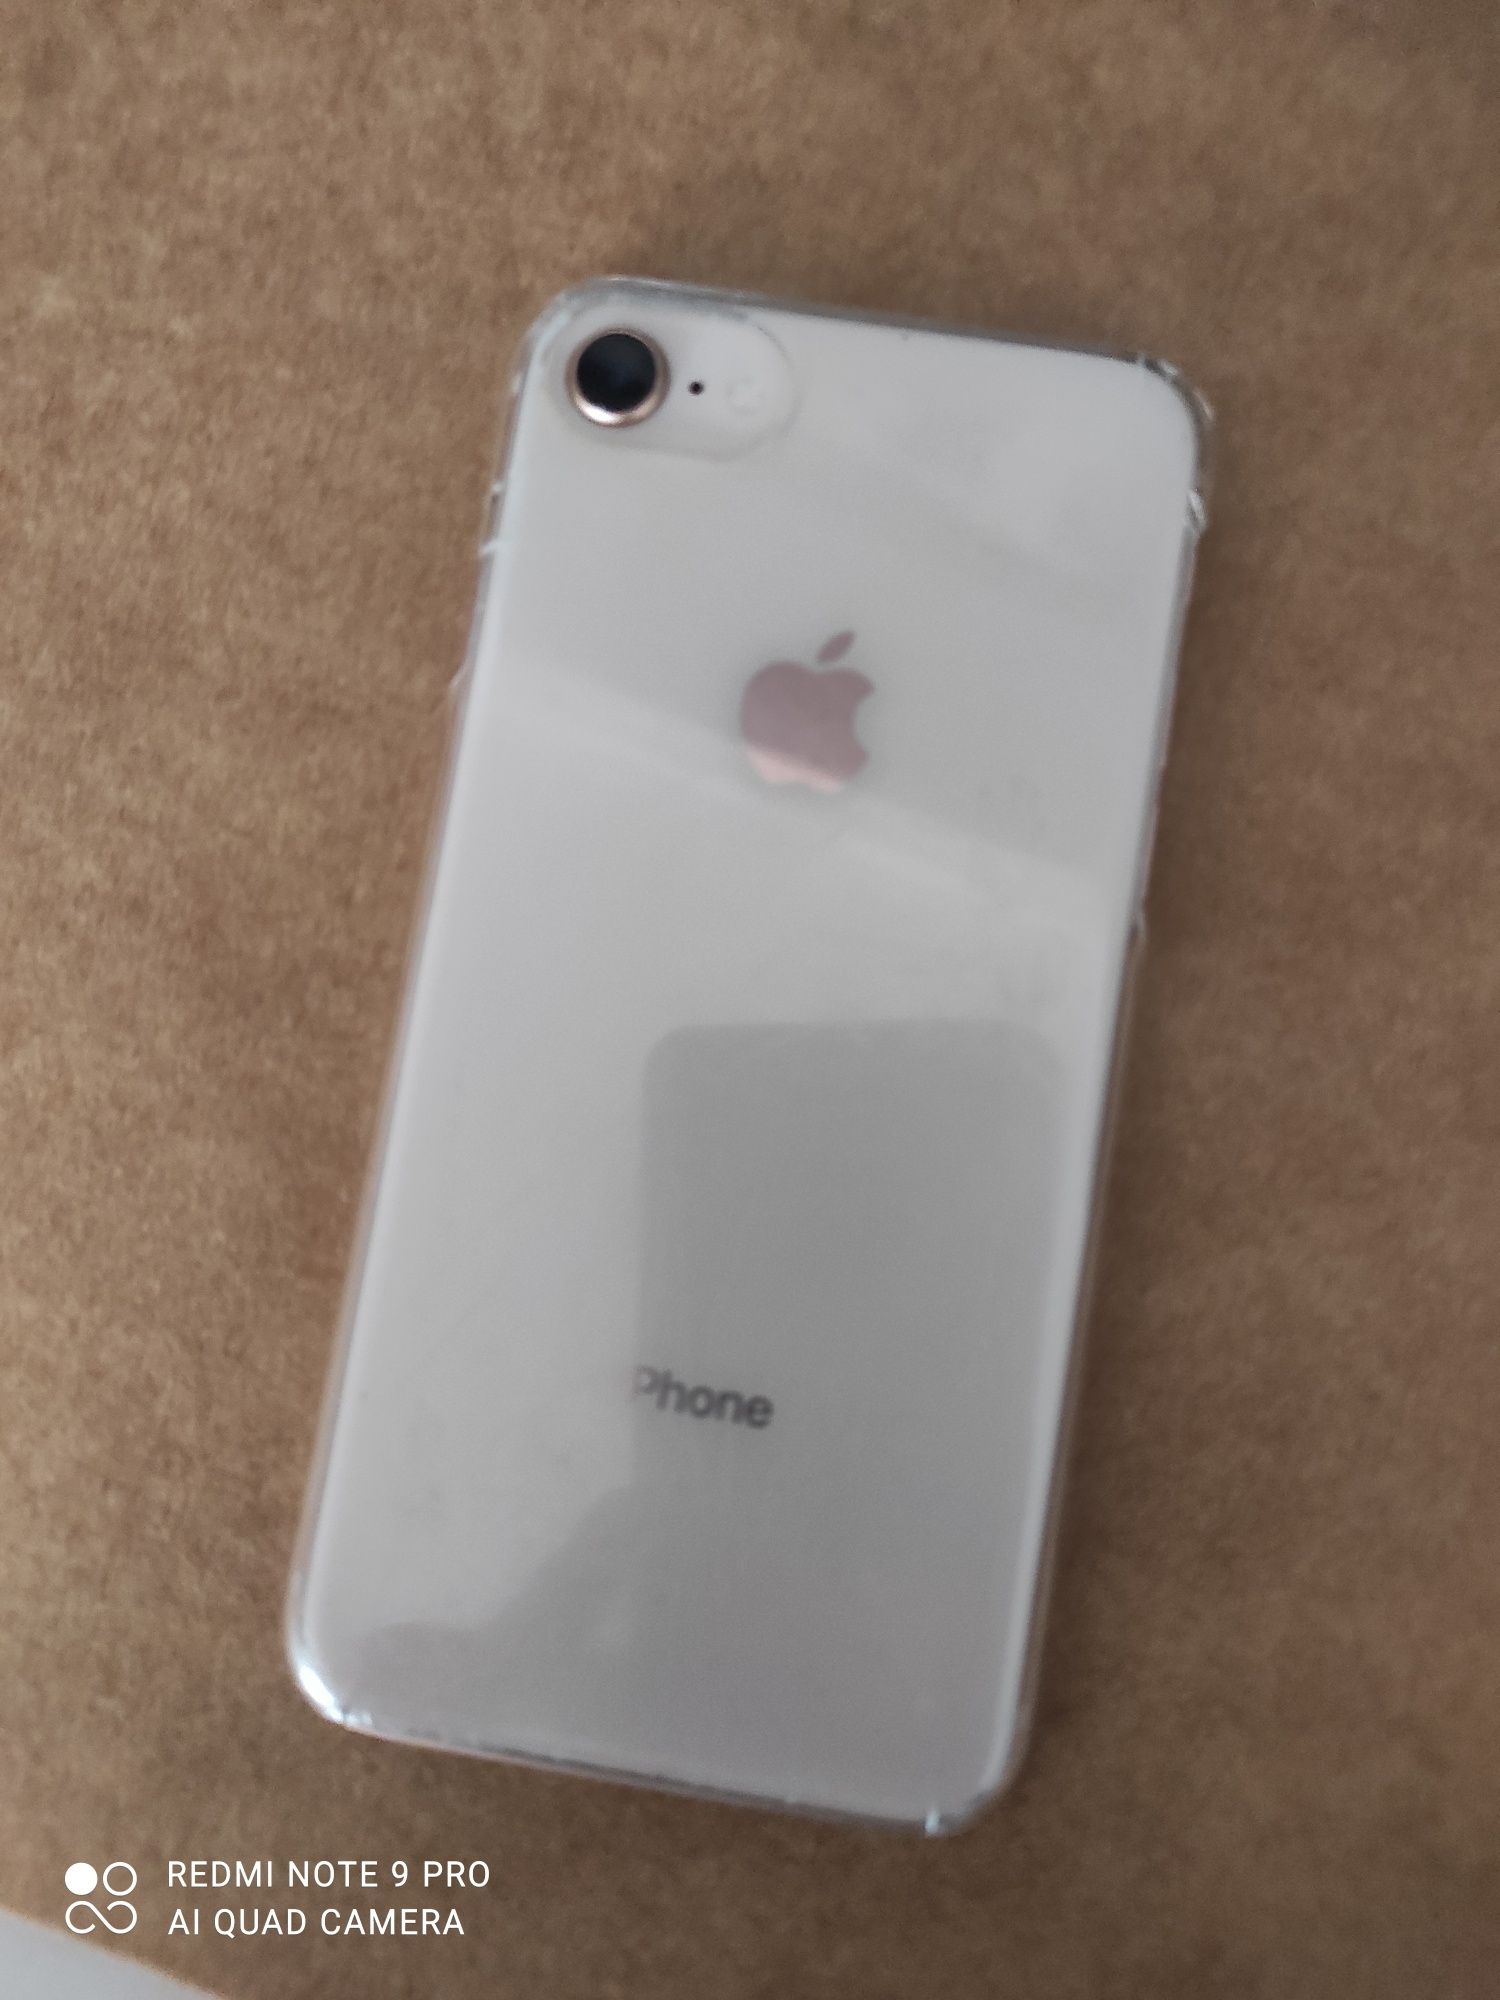 iPhone 8 64gb Rosa gold, oferta da Páscoa